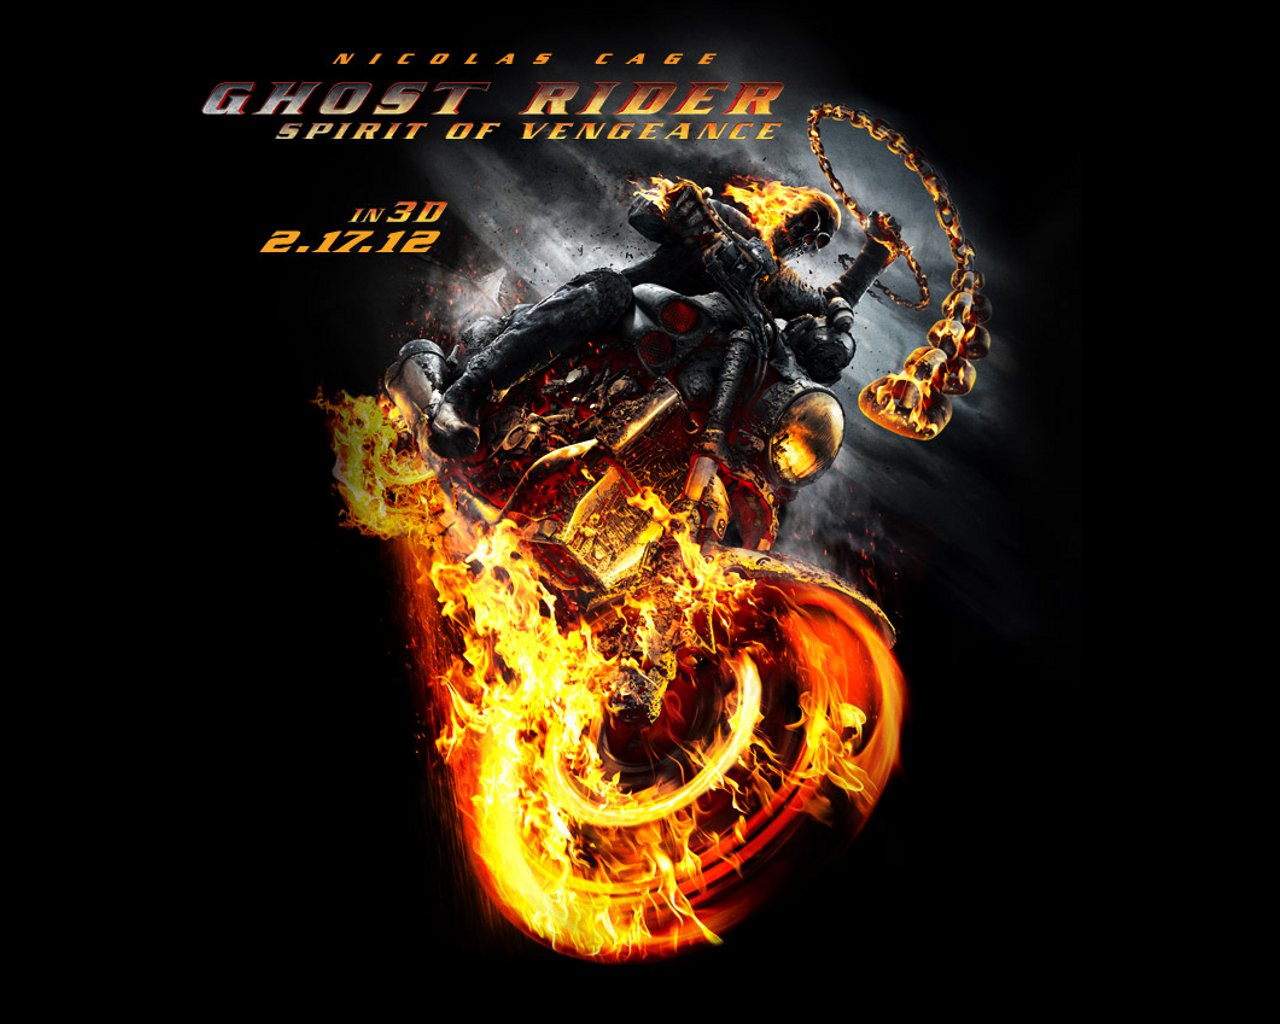 http://3.bp.blogspot.com/-oHMCAvCNrzE/TvXBkx5V5NI/AAAAAAAAB74/7ELHYbTdno8/s1600/Ghost-Rider-Spirit-of-Vengeance-Wallpaper-01.jpg